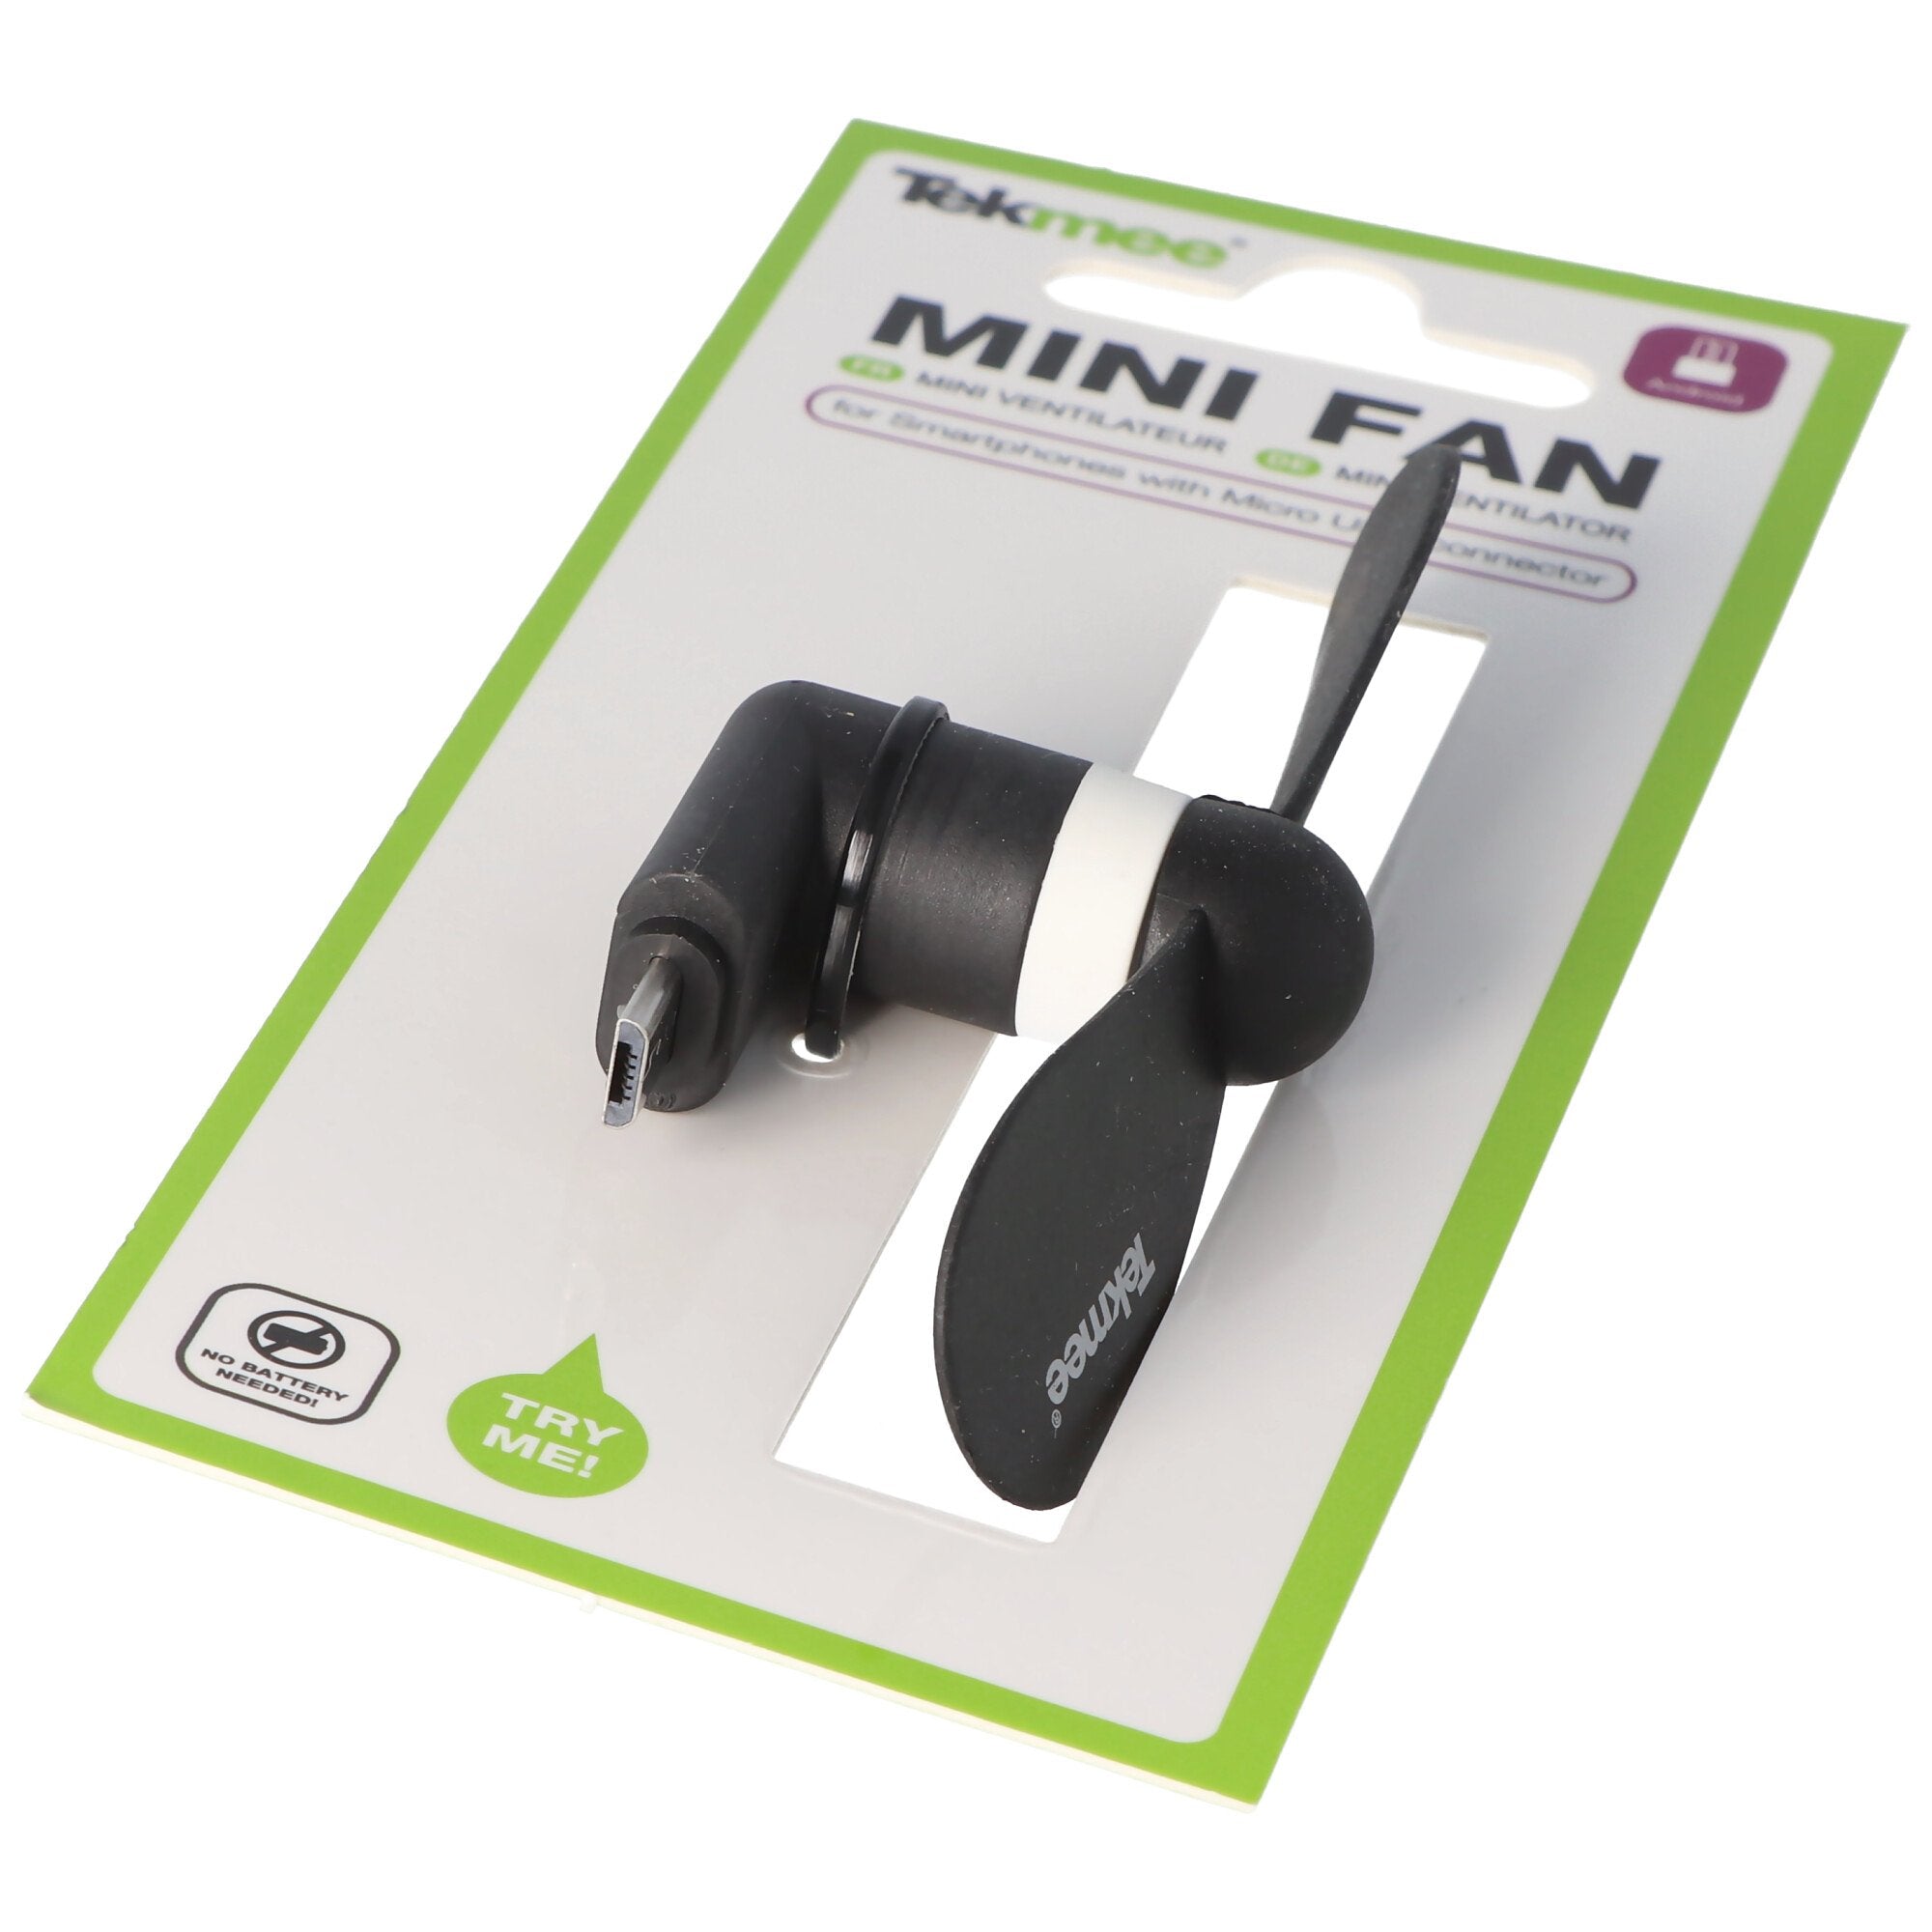 Miniventilator voor smartphones met micro-USB-aansluiting, micro-USB-aansluiting, ventilator voor sm